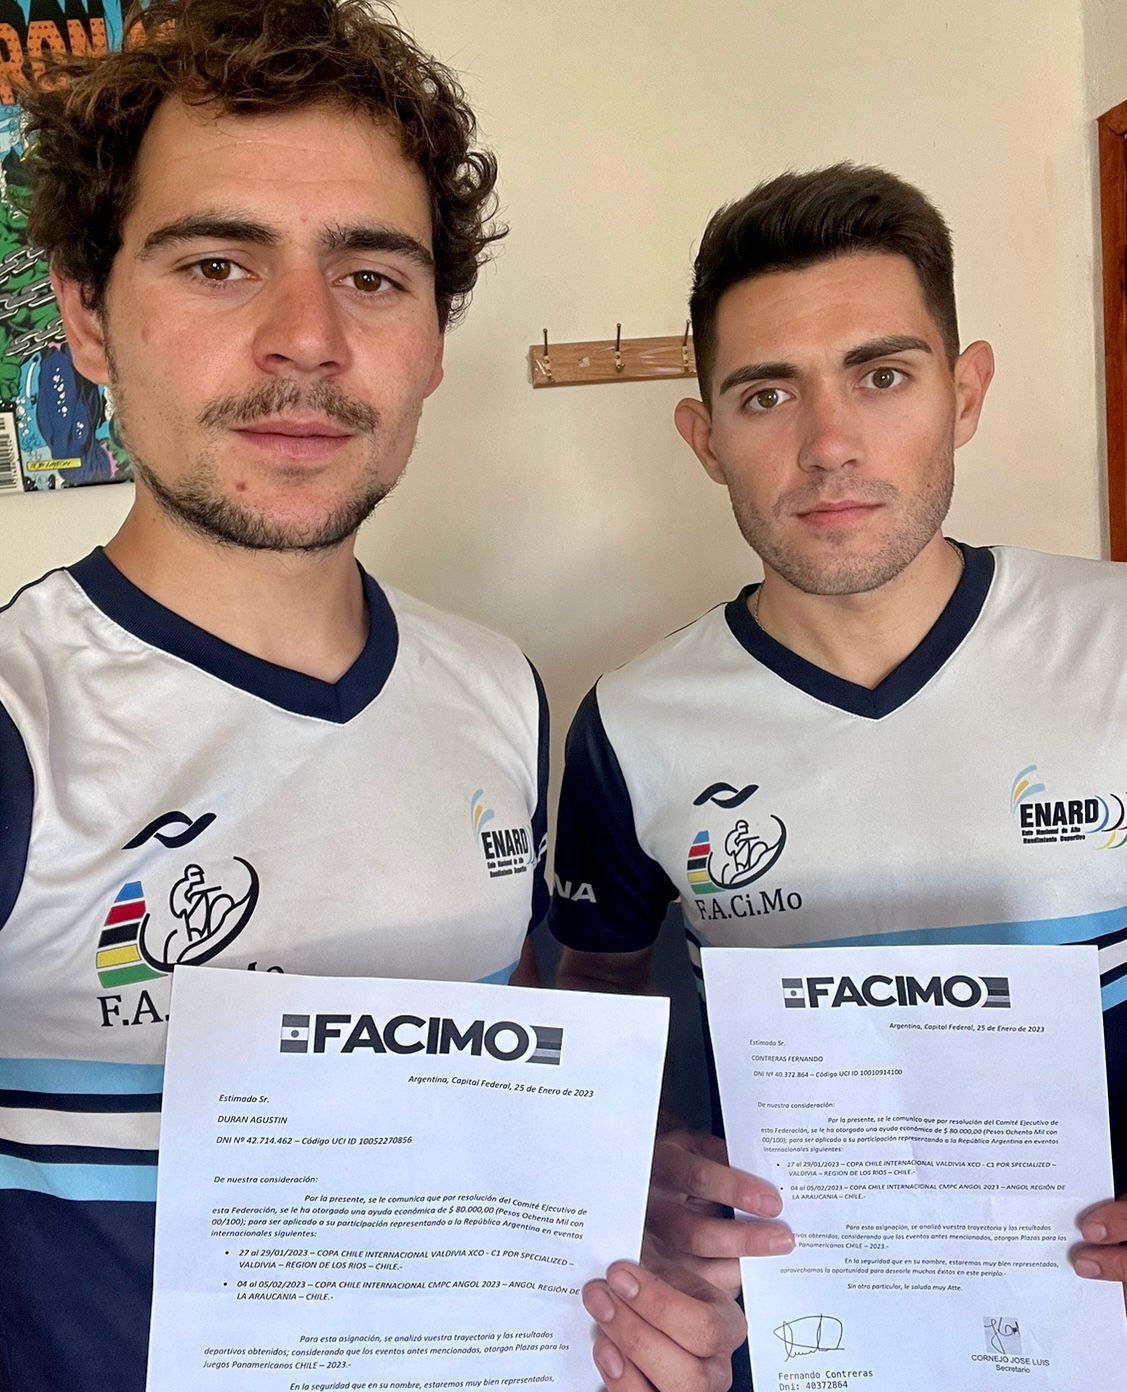 Fernando Contreras y Agustin Durán reciben subsidio de la FACIMO para realizar gira deportiva